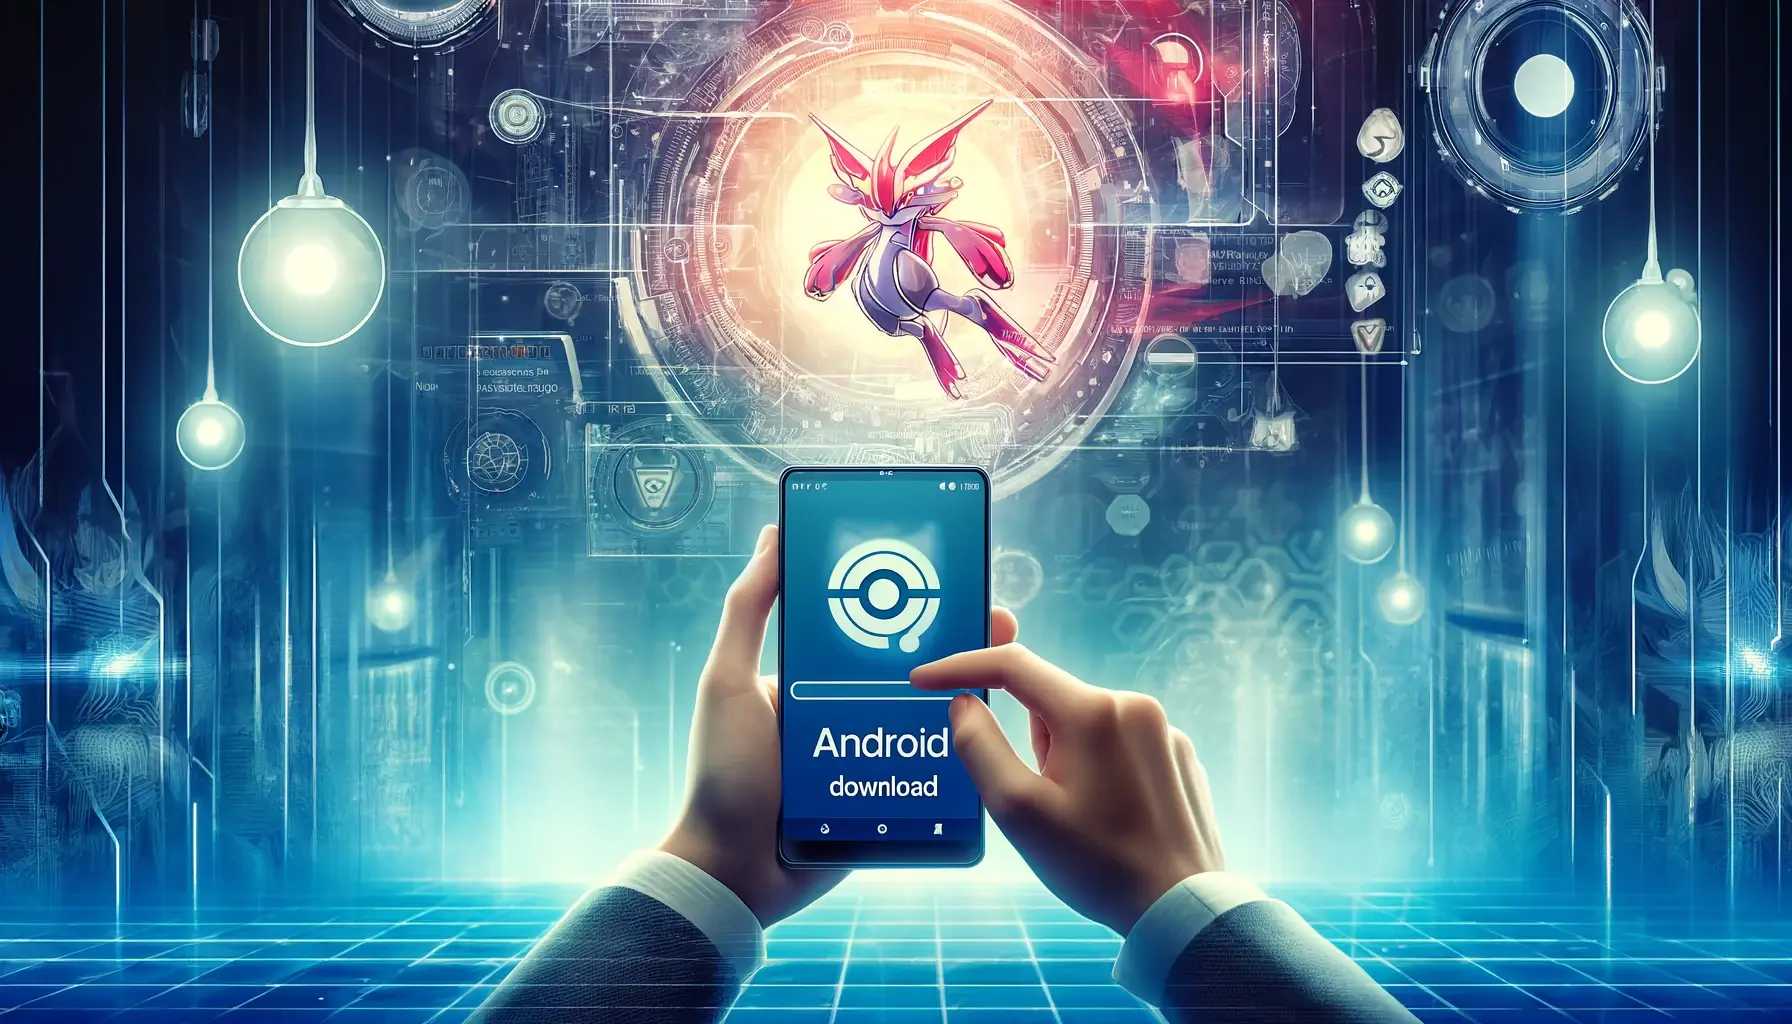 Pokemon Infinite Fusion Android Download. The image will depict a futuristic, high-tech scene